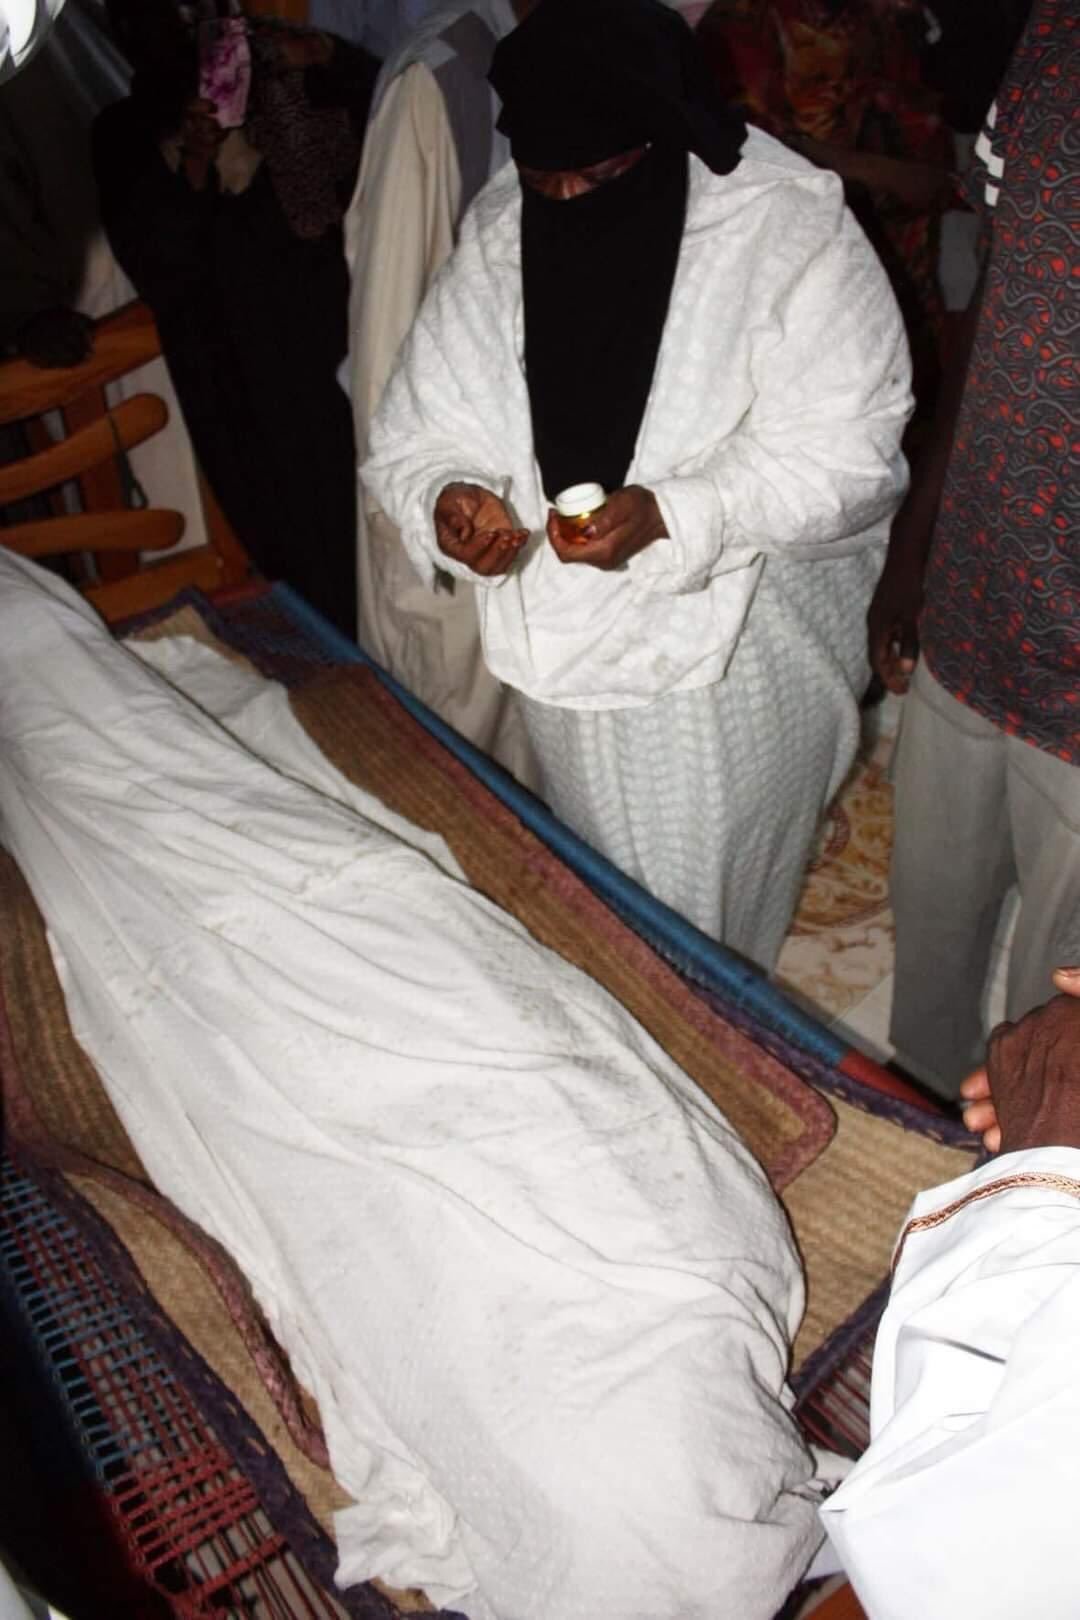 لجنة أطباء السودان: ارتقاء روح متظاهر متأثرا بإصابته بالرصاص الحي في مليونية 17نوفمبر